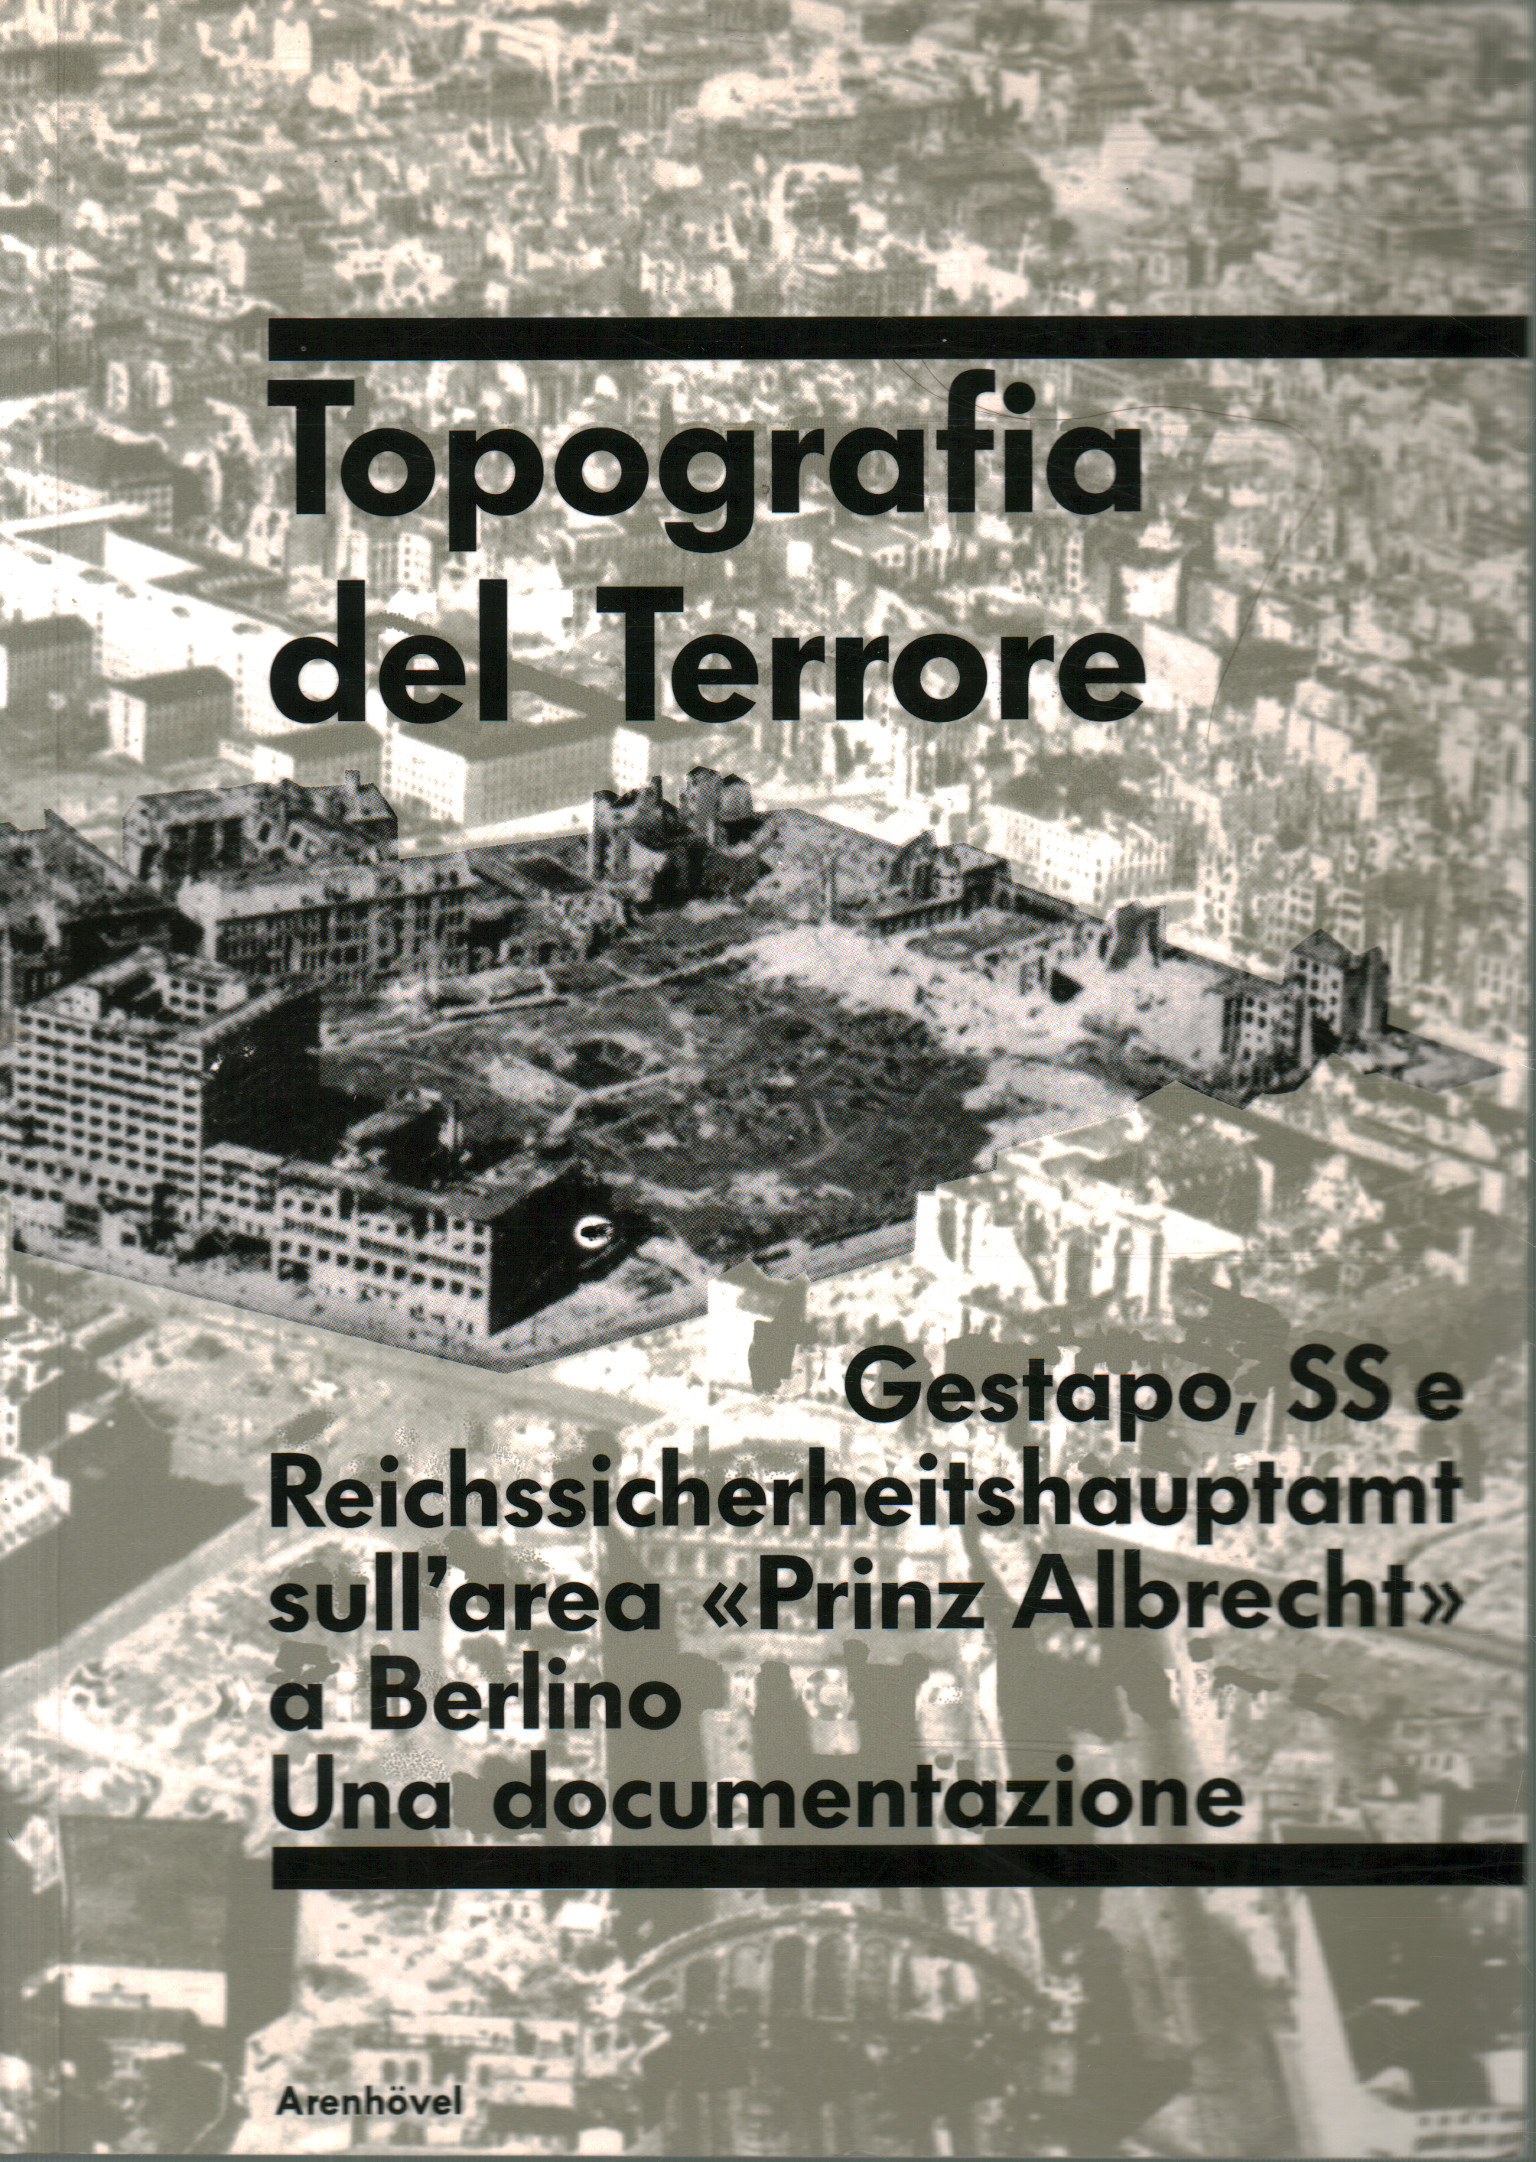 Topography of Terror, Reinhard Rurup